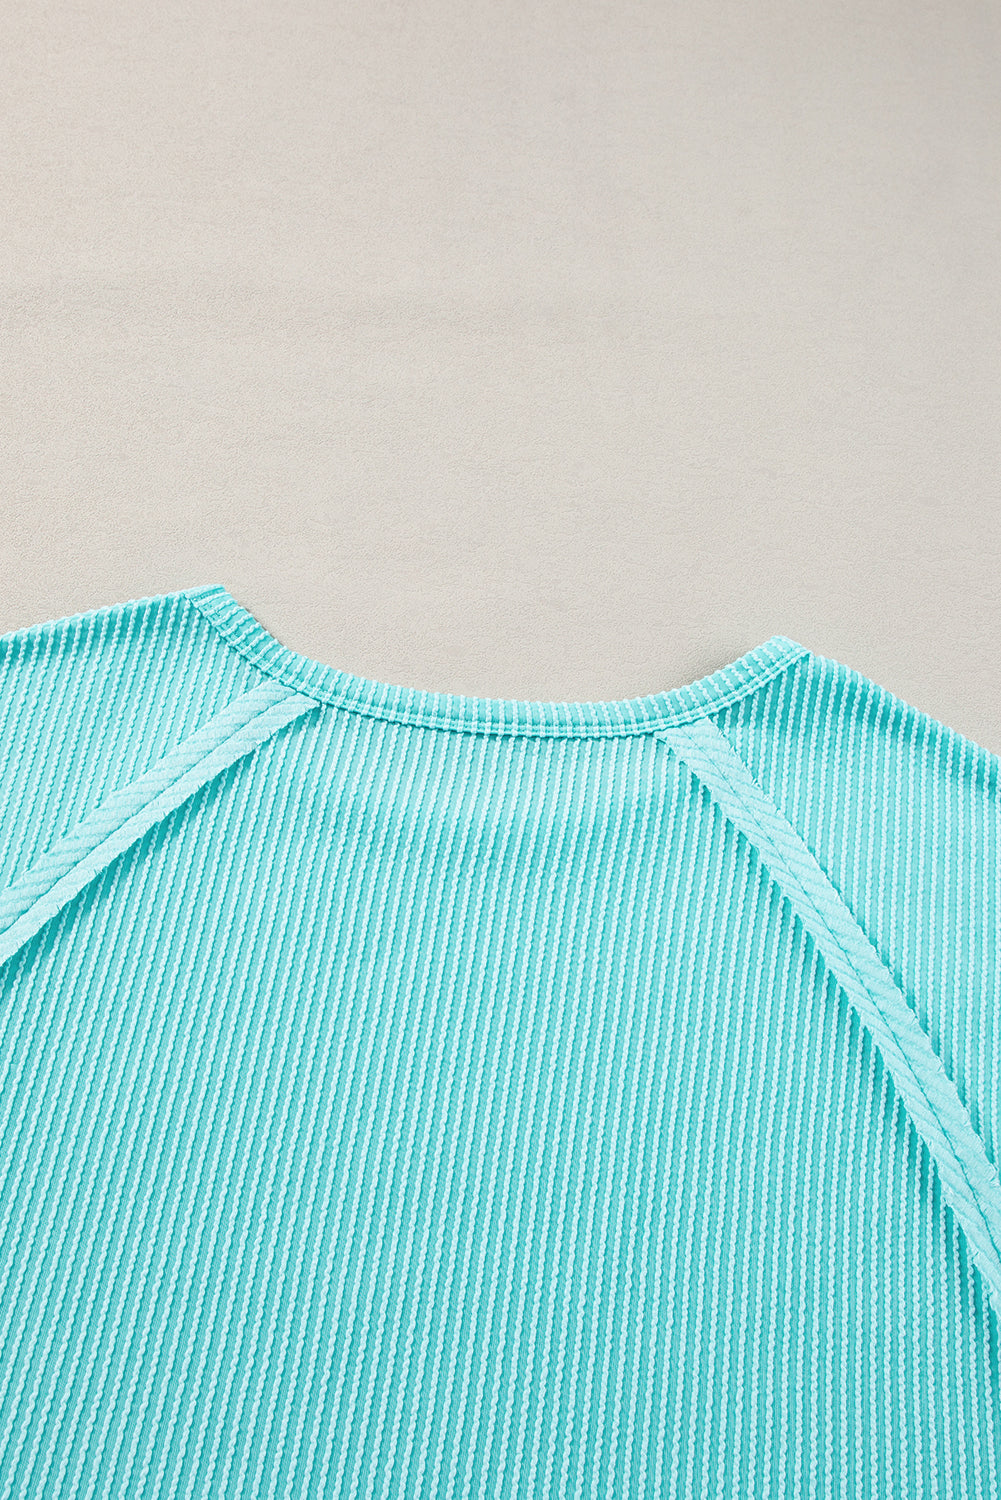 Svetlo modra majica velikih velikosti z izpostavljenimi šivi in ​​rebrami za prosti čas